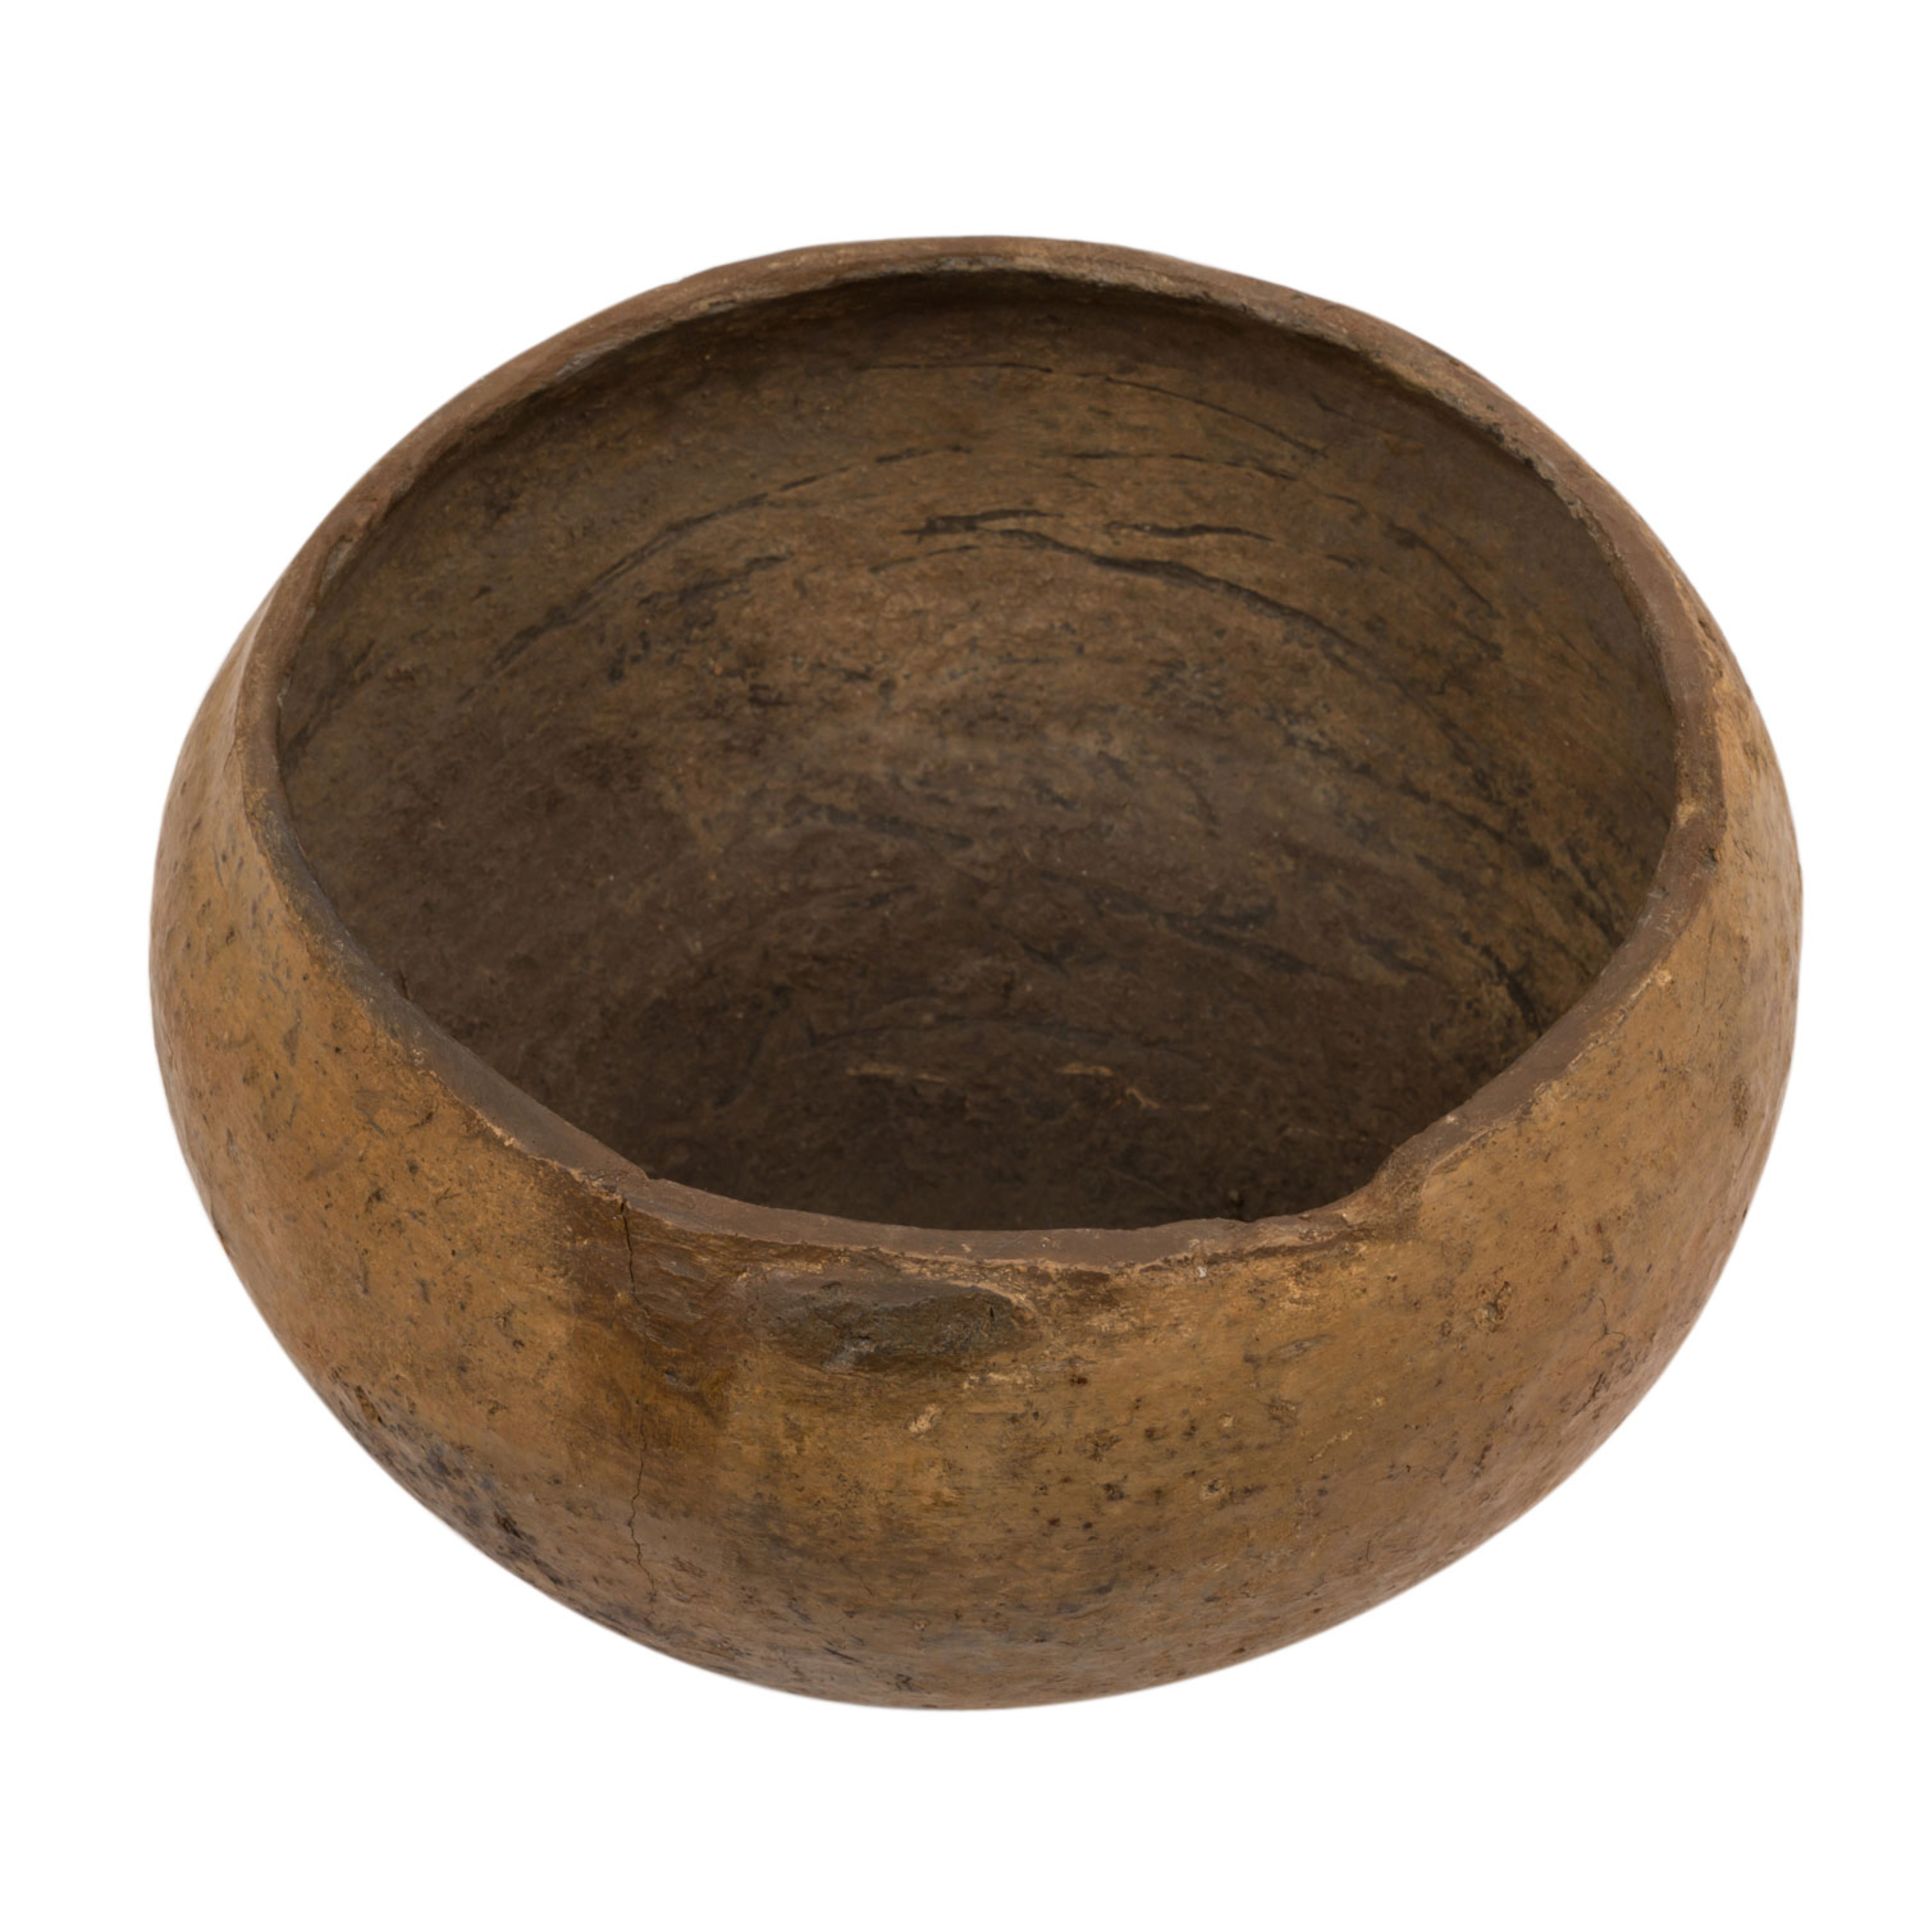 Prähistorische Keramik der Bronze-/Eisenzeit -schlichtes braunes Tongefäß, vermutli - Bild 3 aus 3